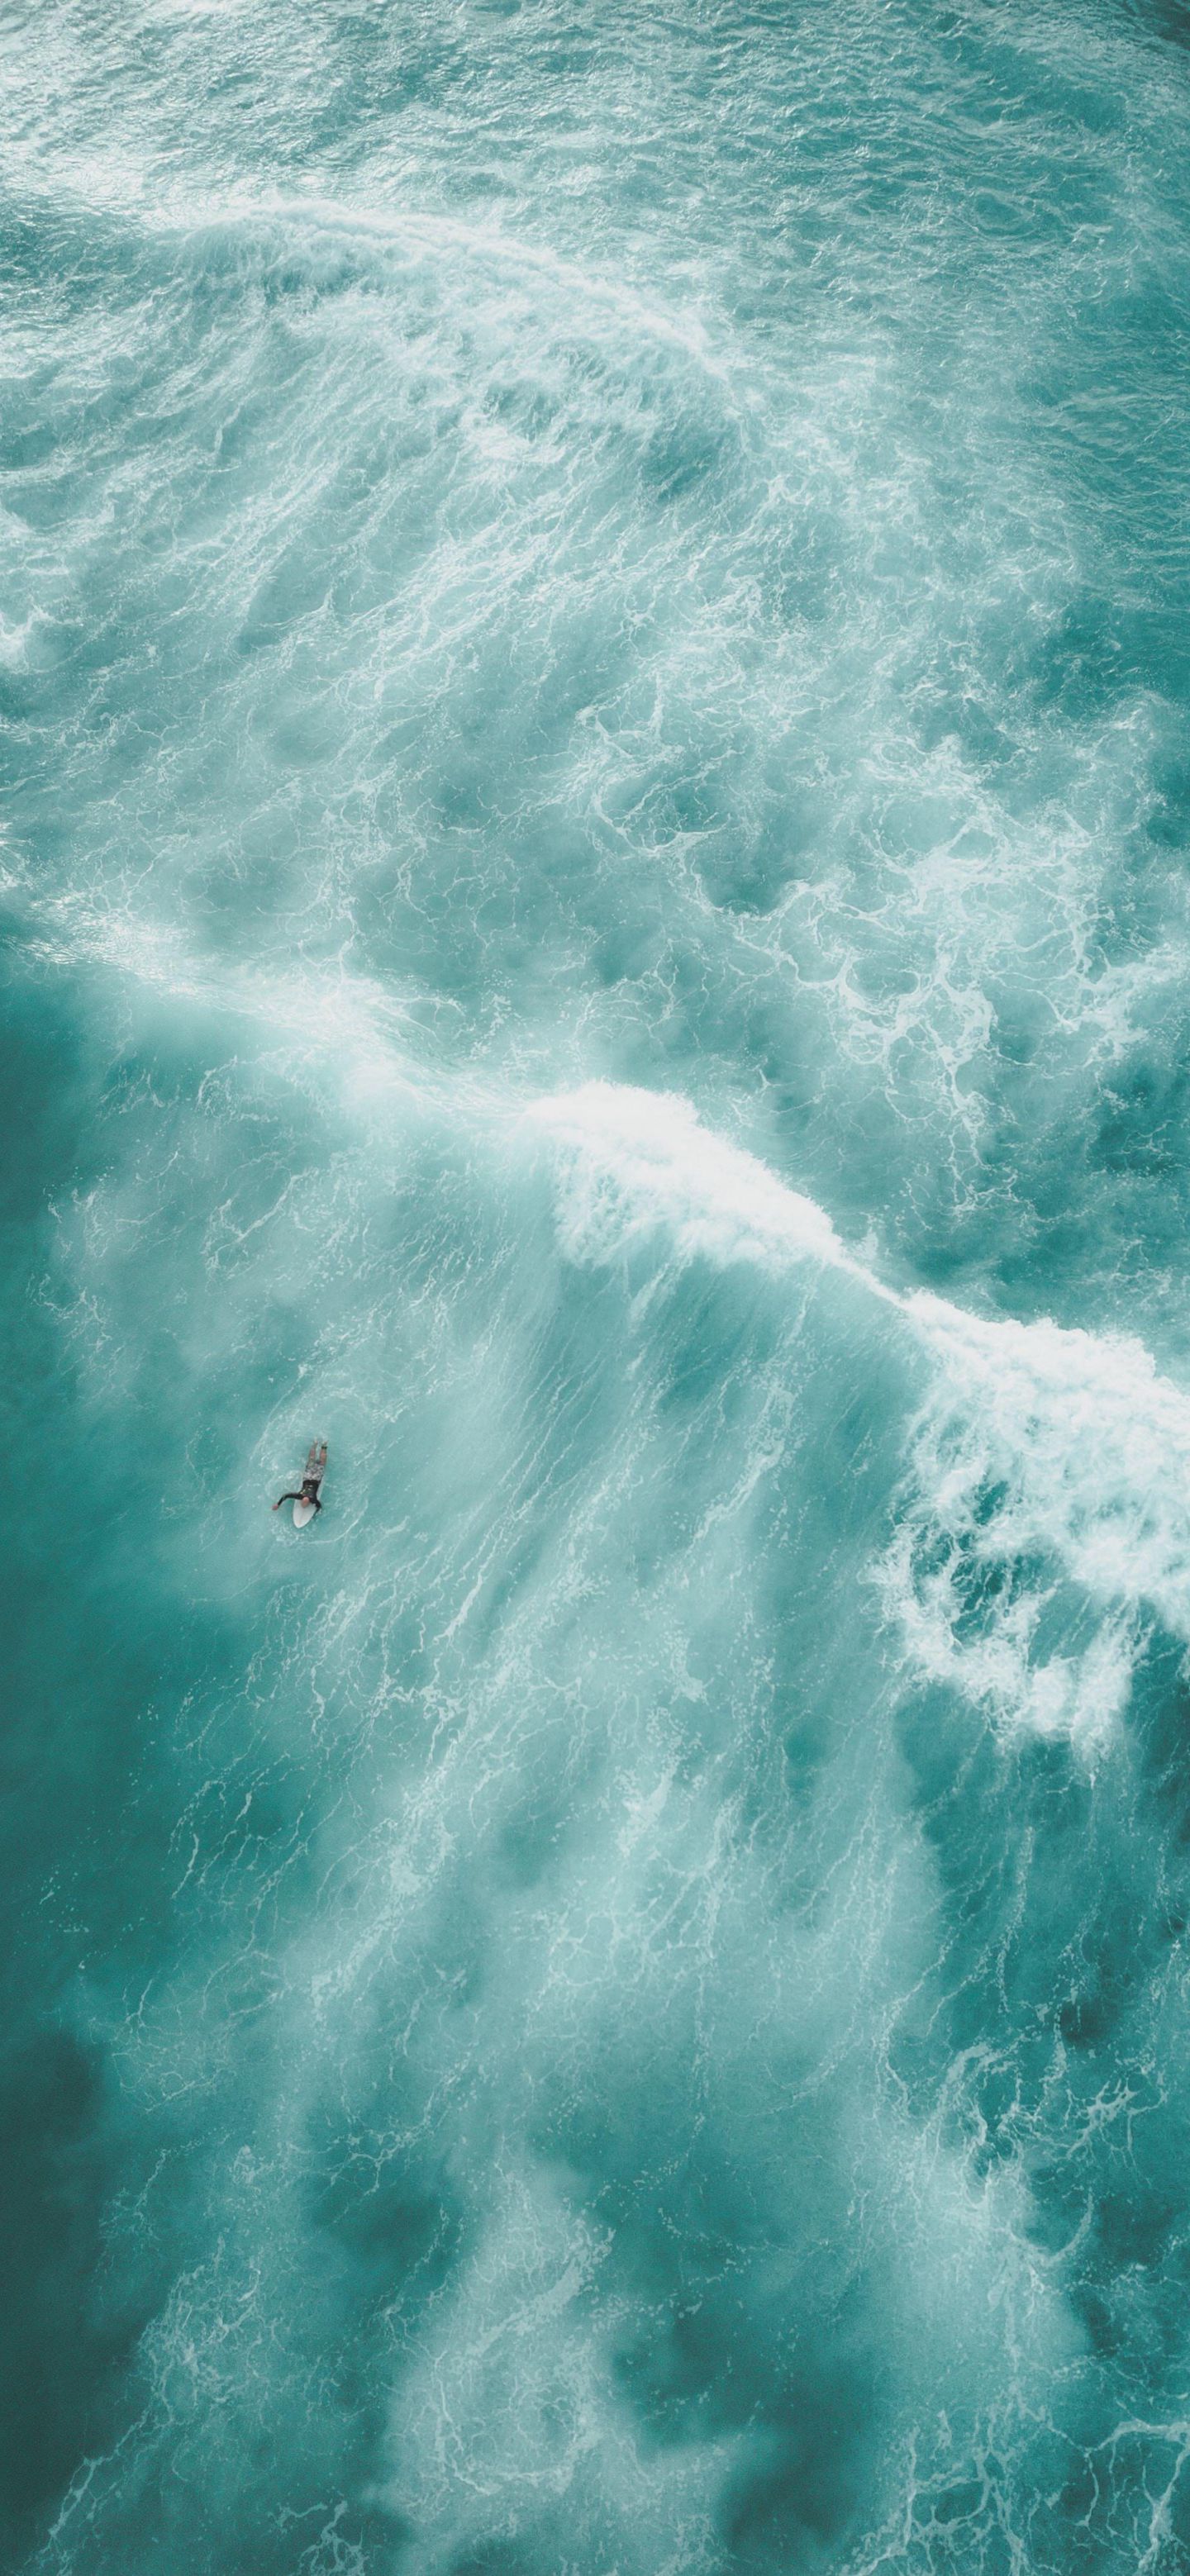 波涛汹涌 一个玩冲浪板的人，唯美壮观海上风光手机壁纸图片 大海